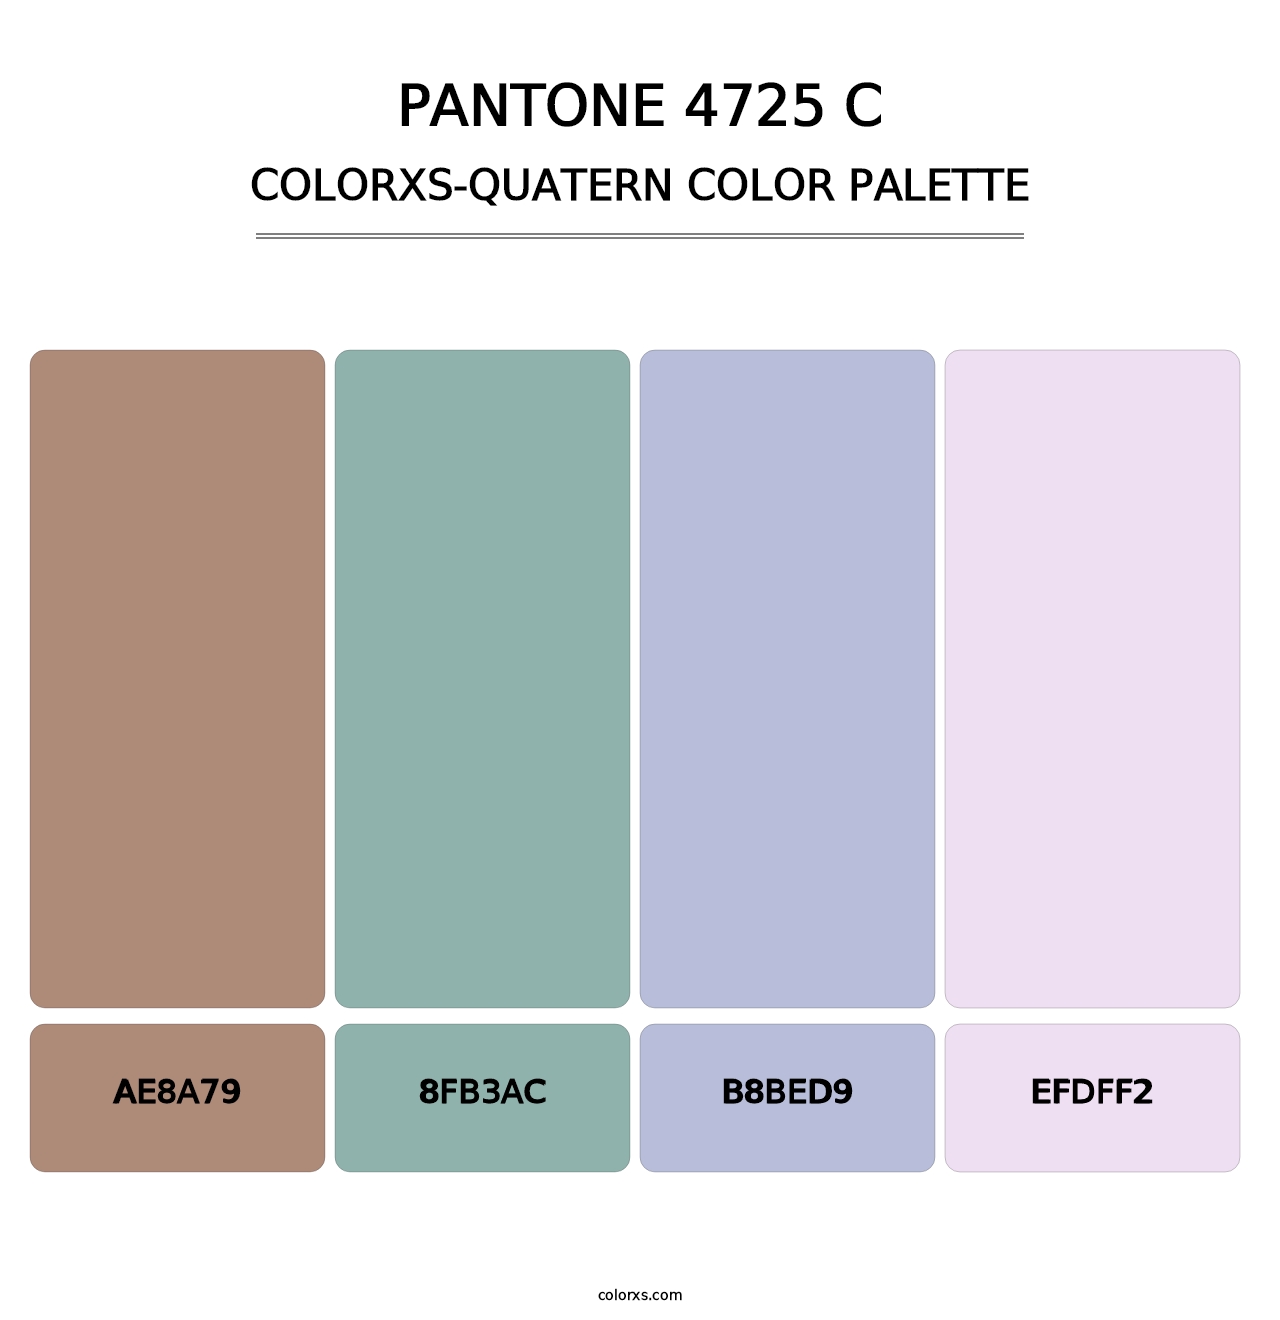 PANTONE 4725 C - Colorxs Quatern Palette